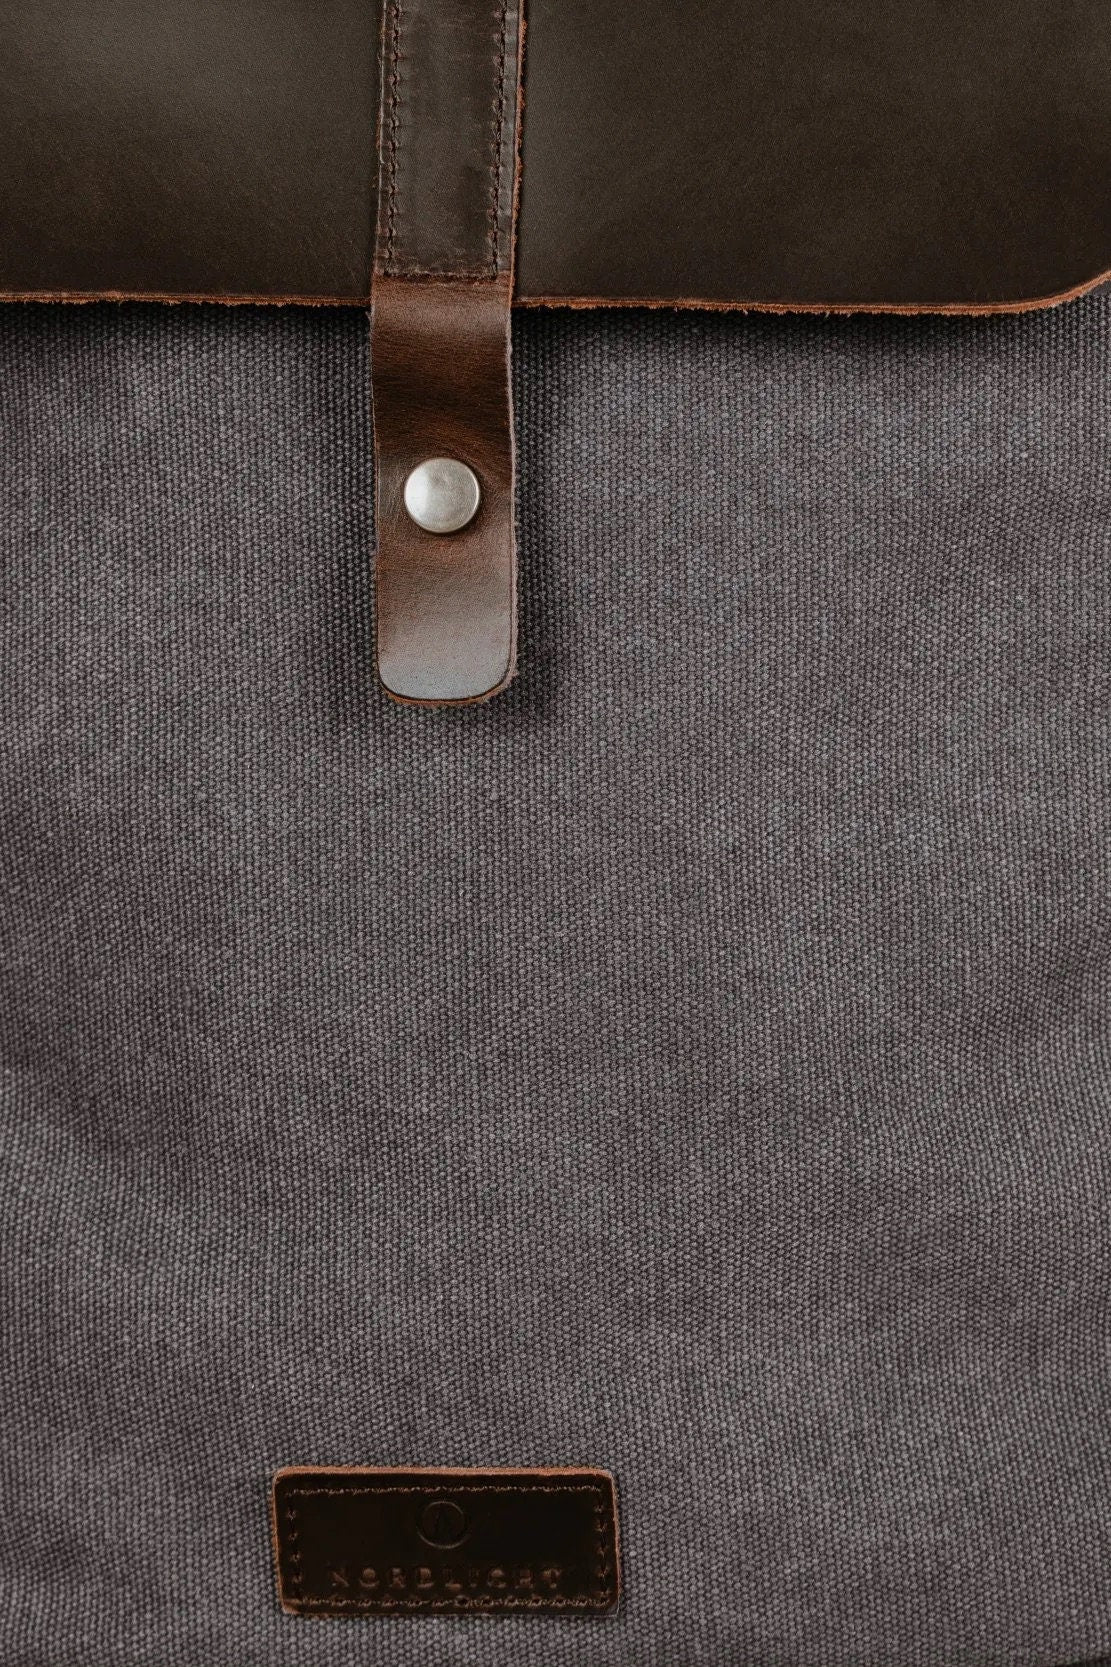 NORDLICHT Rucksack FRIIS grau Segeltuch und hochwertiges Echtleder Sustainable, Organic & Fair Lieblingsteil